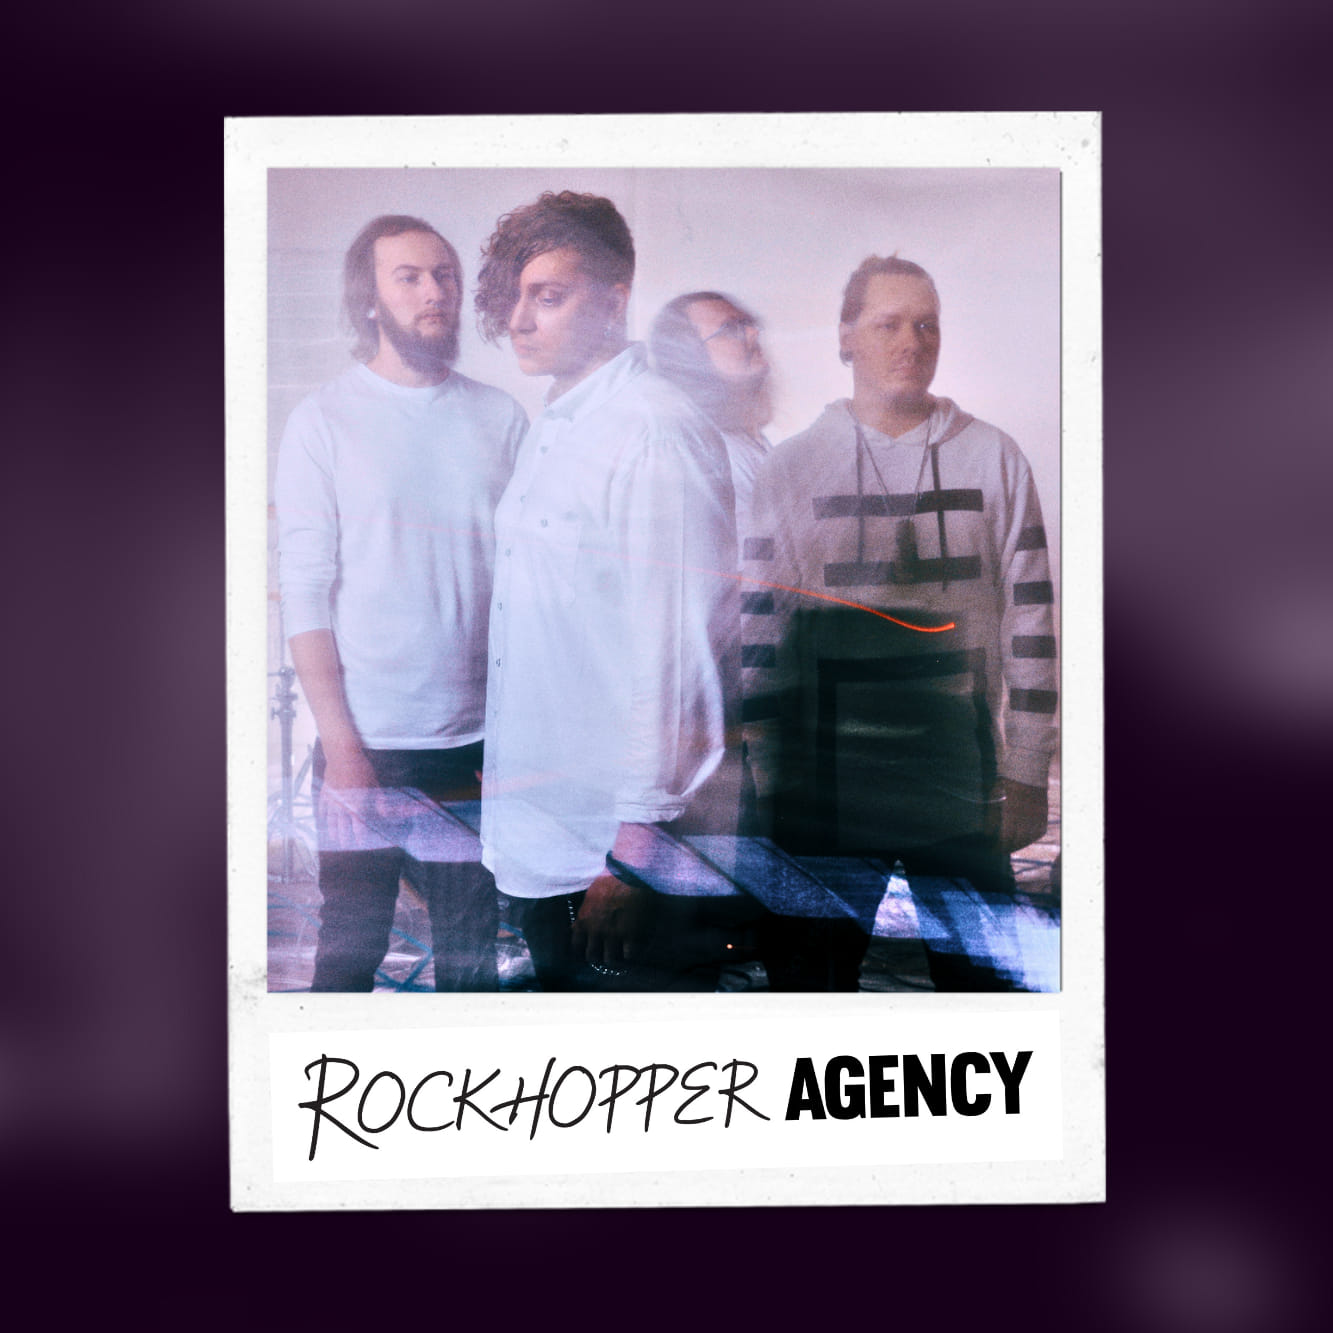 Rockhopper agency